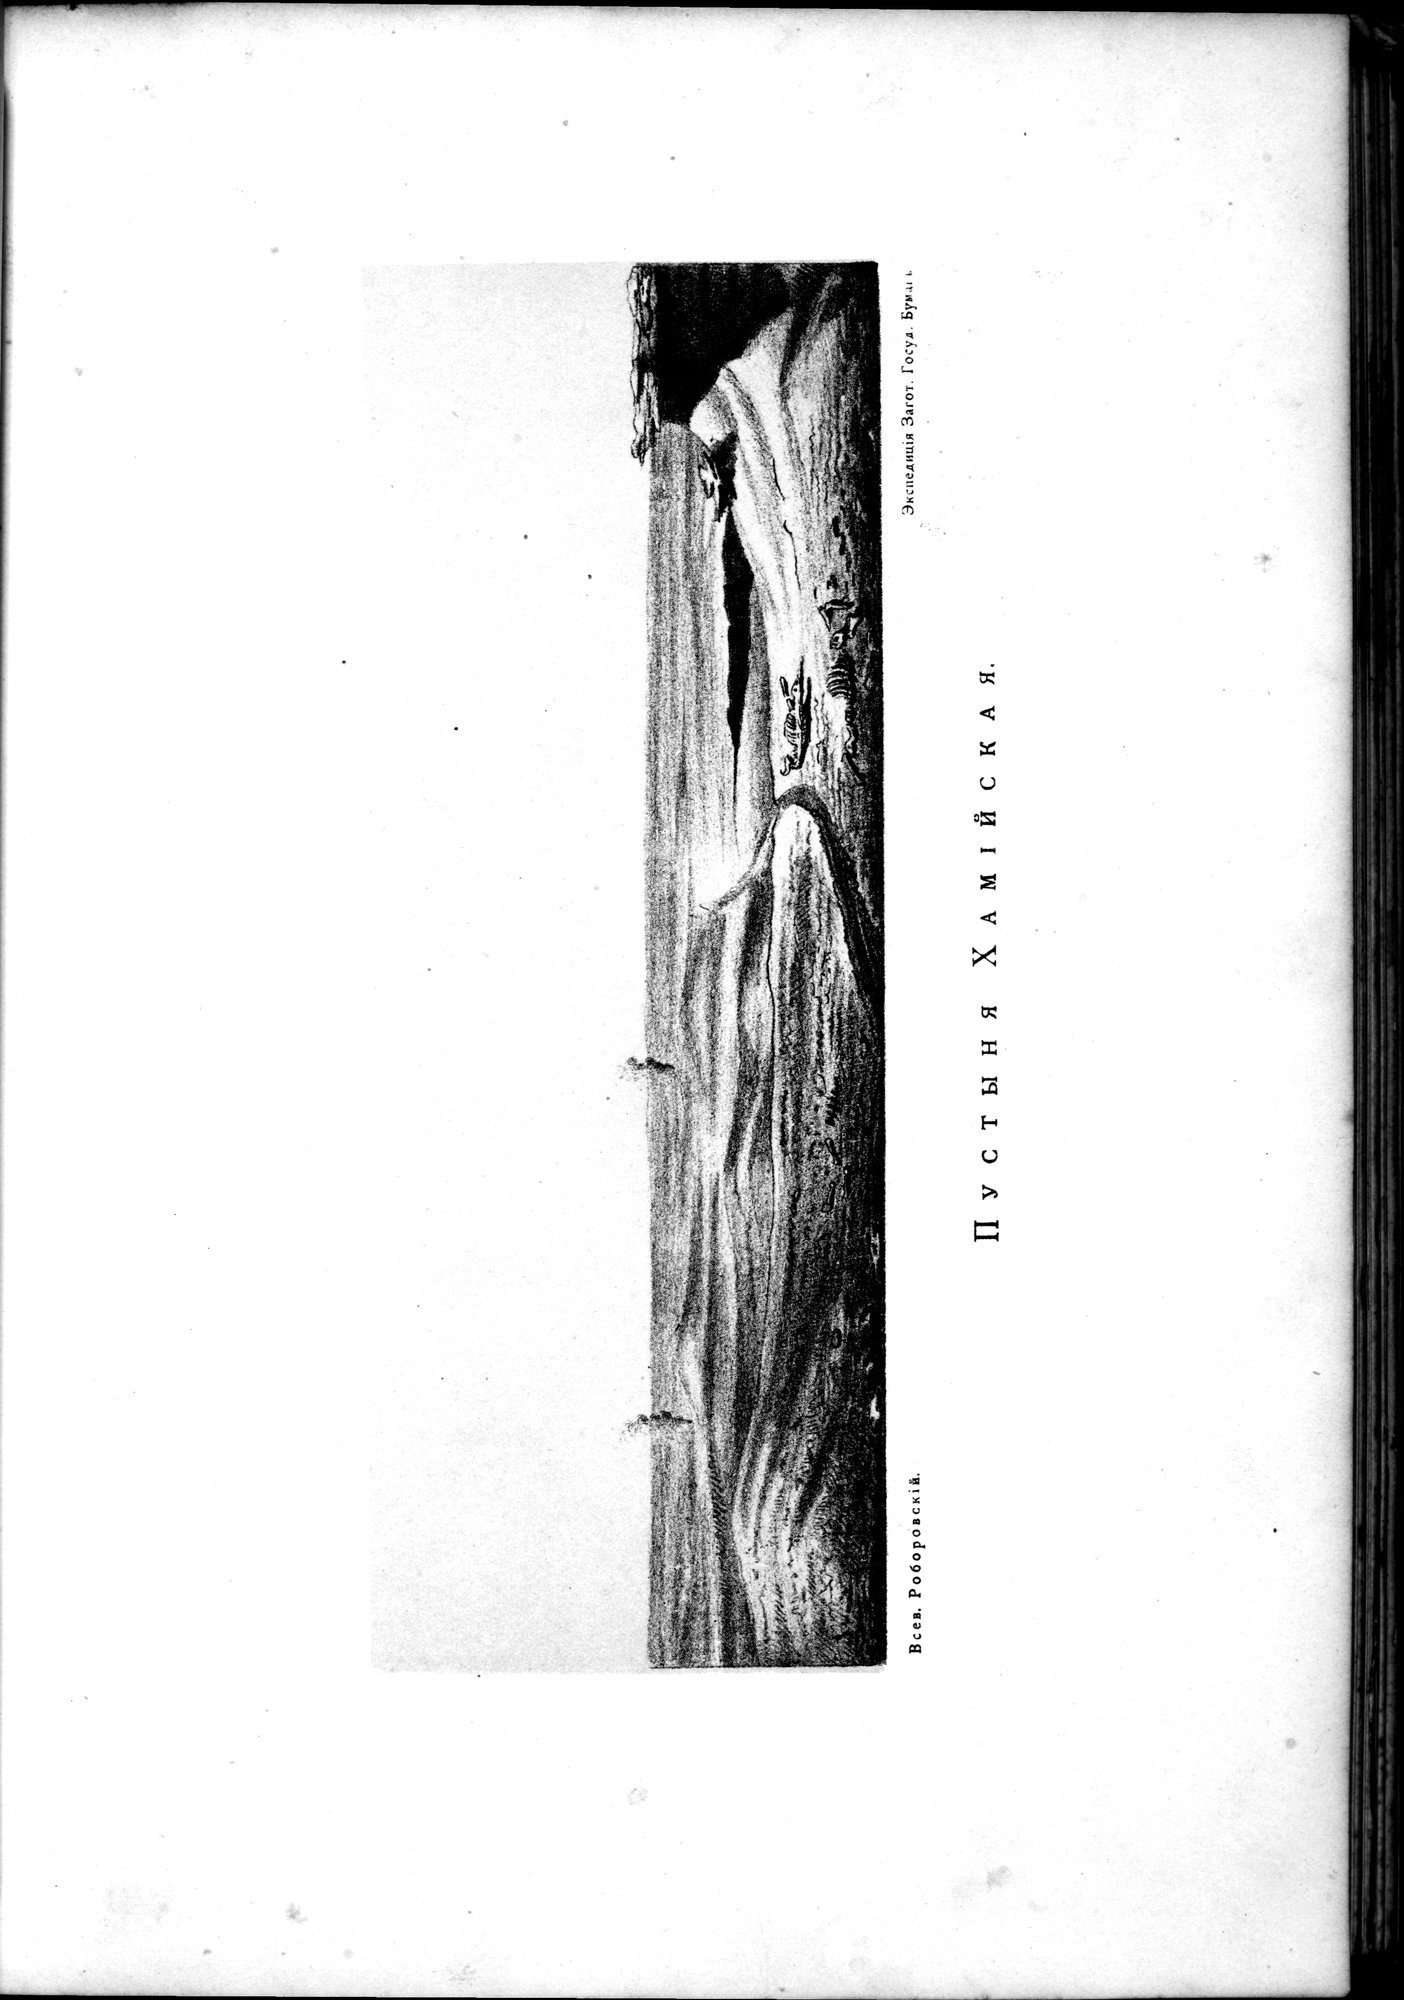 Iz Zaisana Cherez Khami v Tibet i na Verkhov'ya Zheltoi reki : vol.1 / Page 137 (Grayscale High Resolution Image)